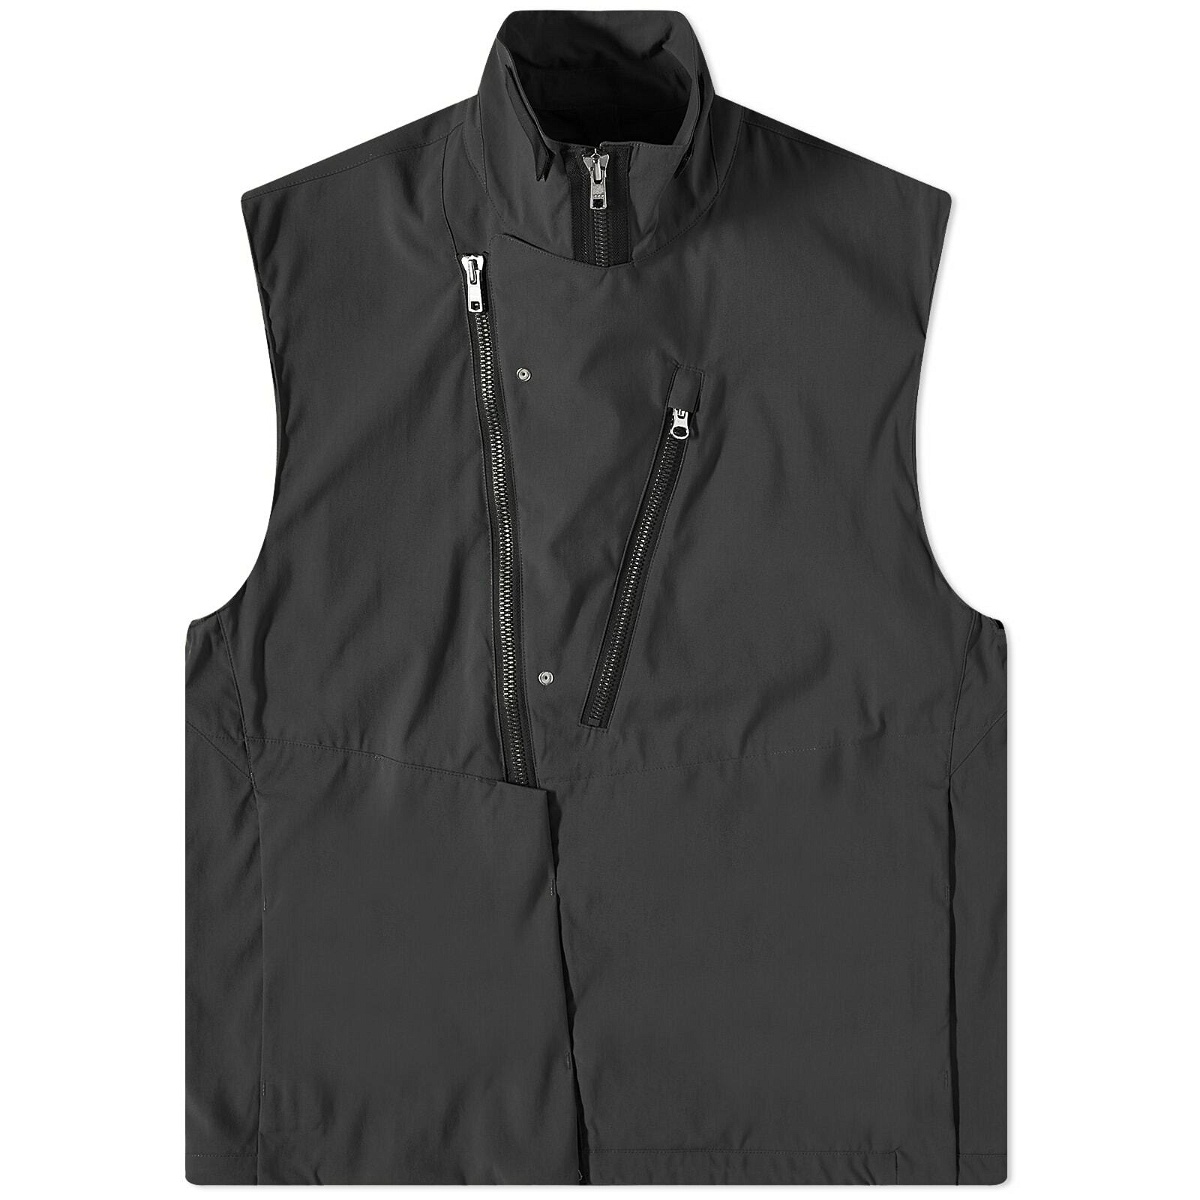 Photo: Acronym Men's Nylon Stretch Rider Vest in Black